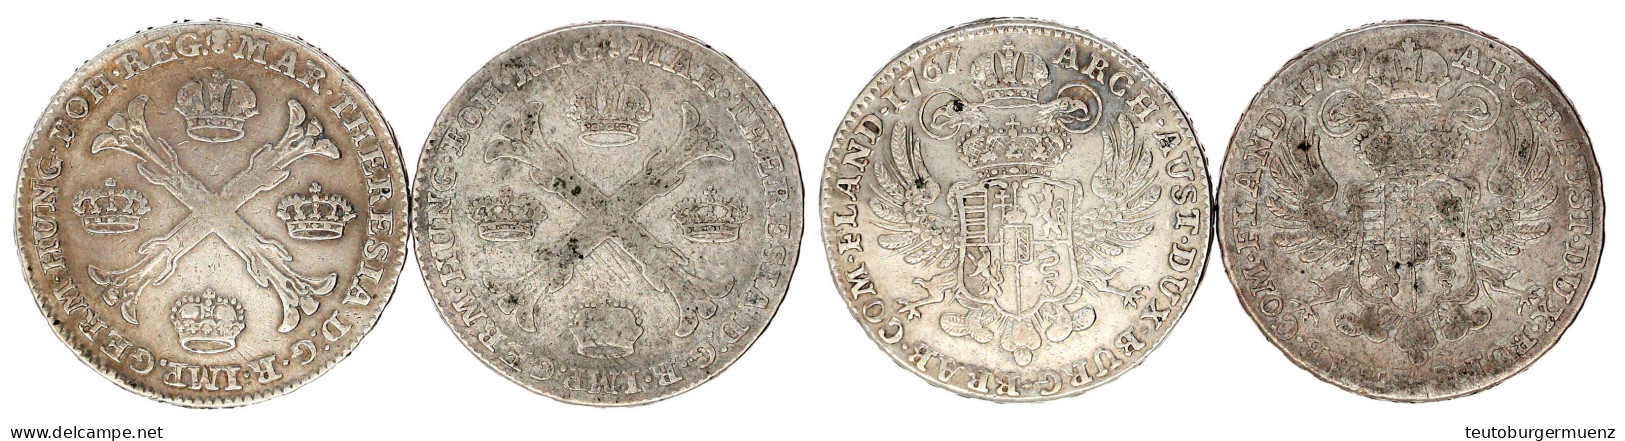 2 X Kronentaler: 1767 Und 1769, Brüssel. Sehr Schön Und Fast Sehr Schön. Davenport. 1282. - Gouden Munten